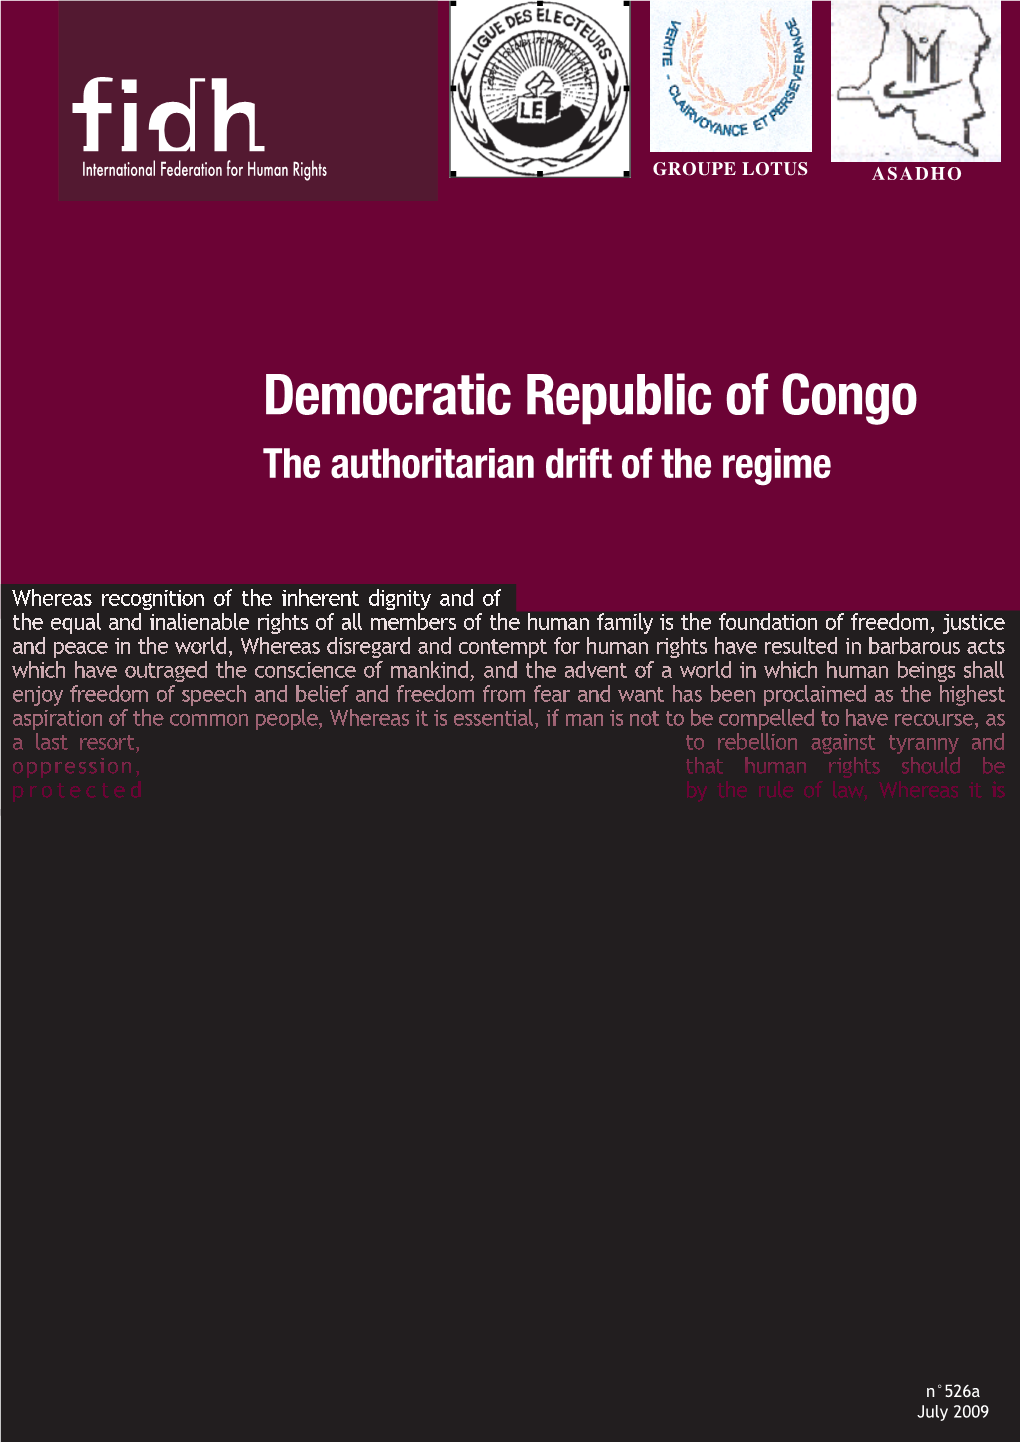 Democratic Republic of Congo the Authoritarian Drift of the Regime